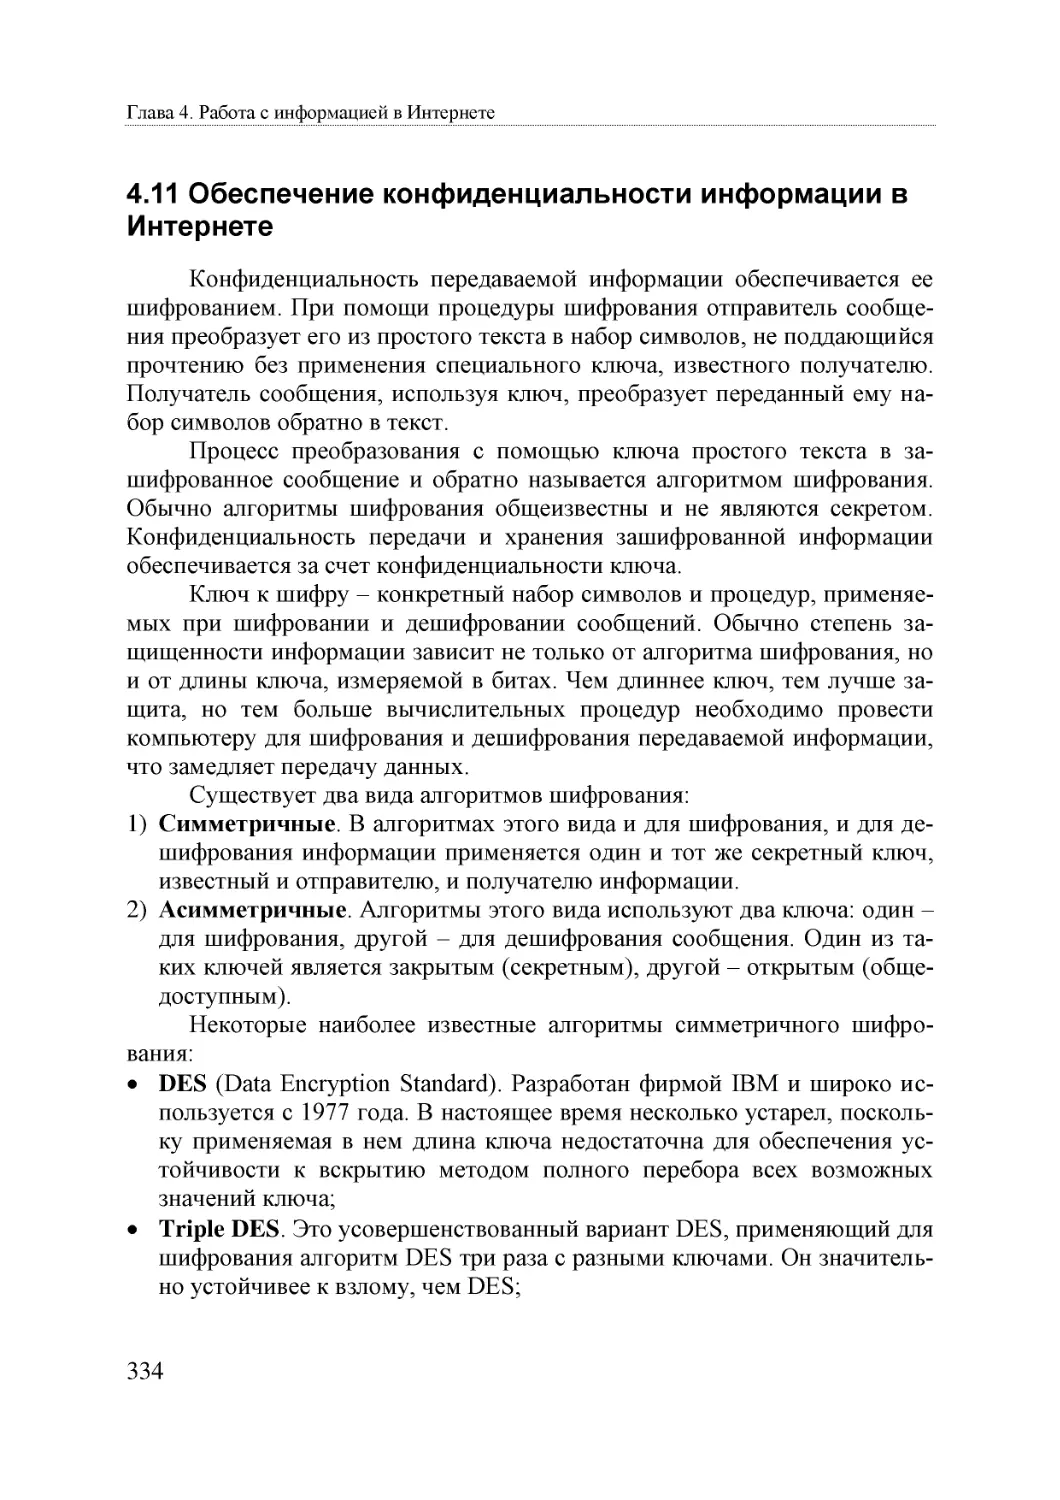 Informatika_Uchebnik_dlya_vuzov_2010 334